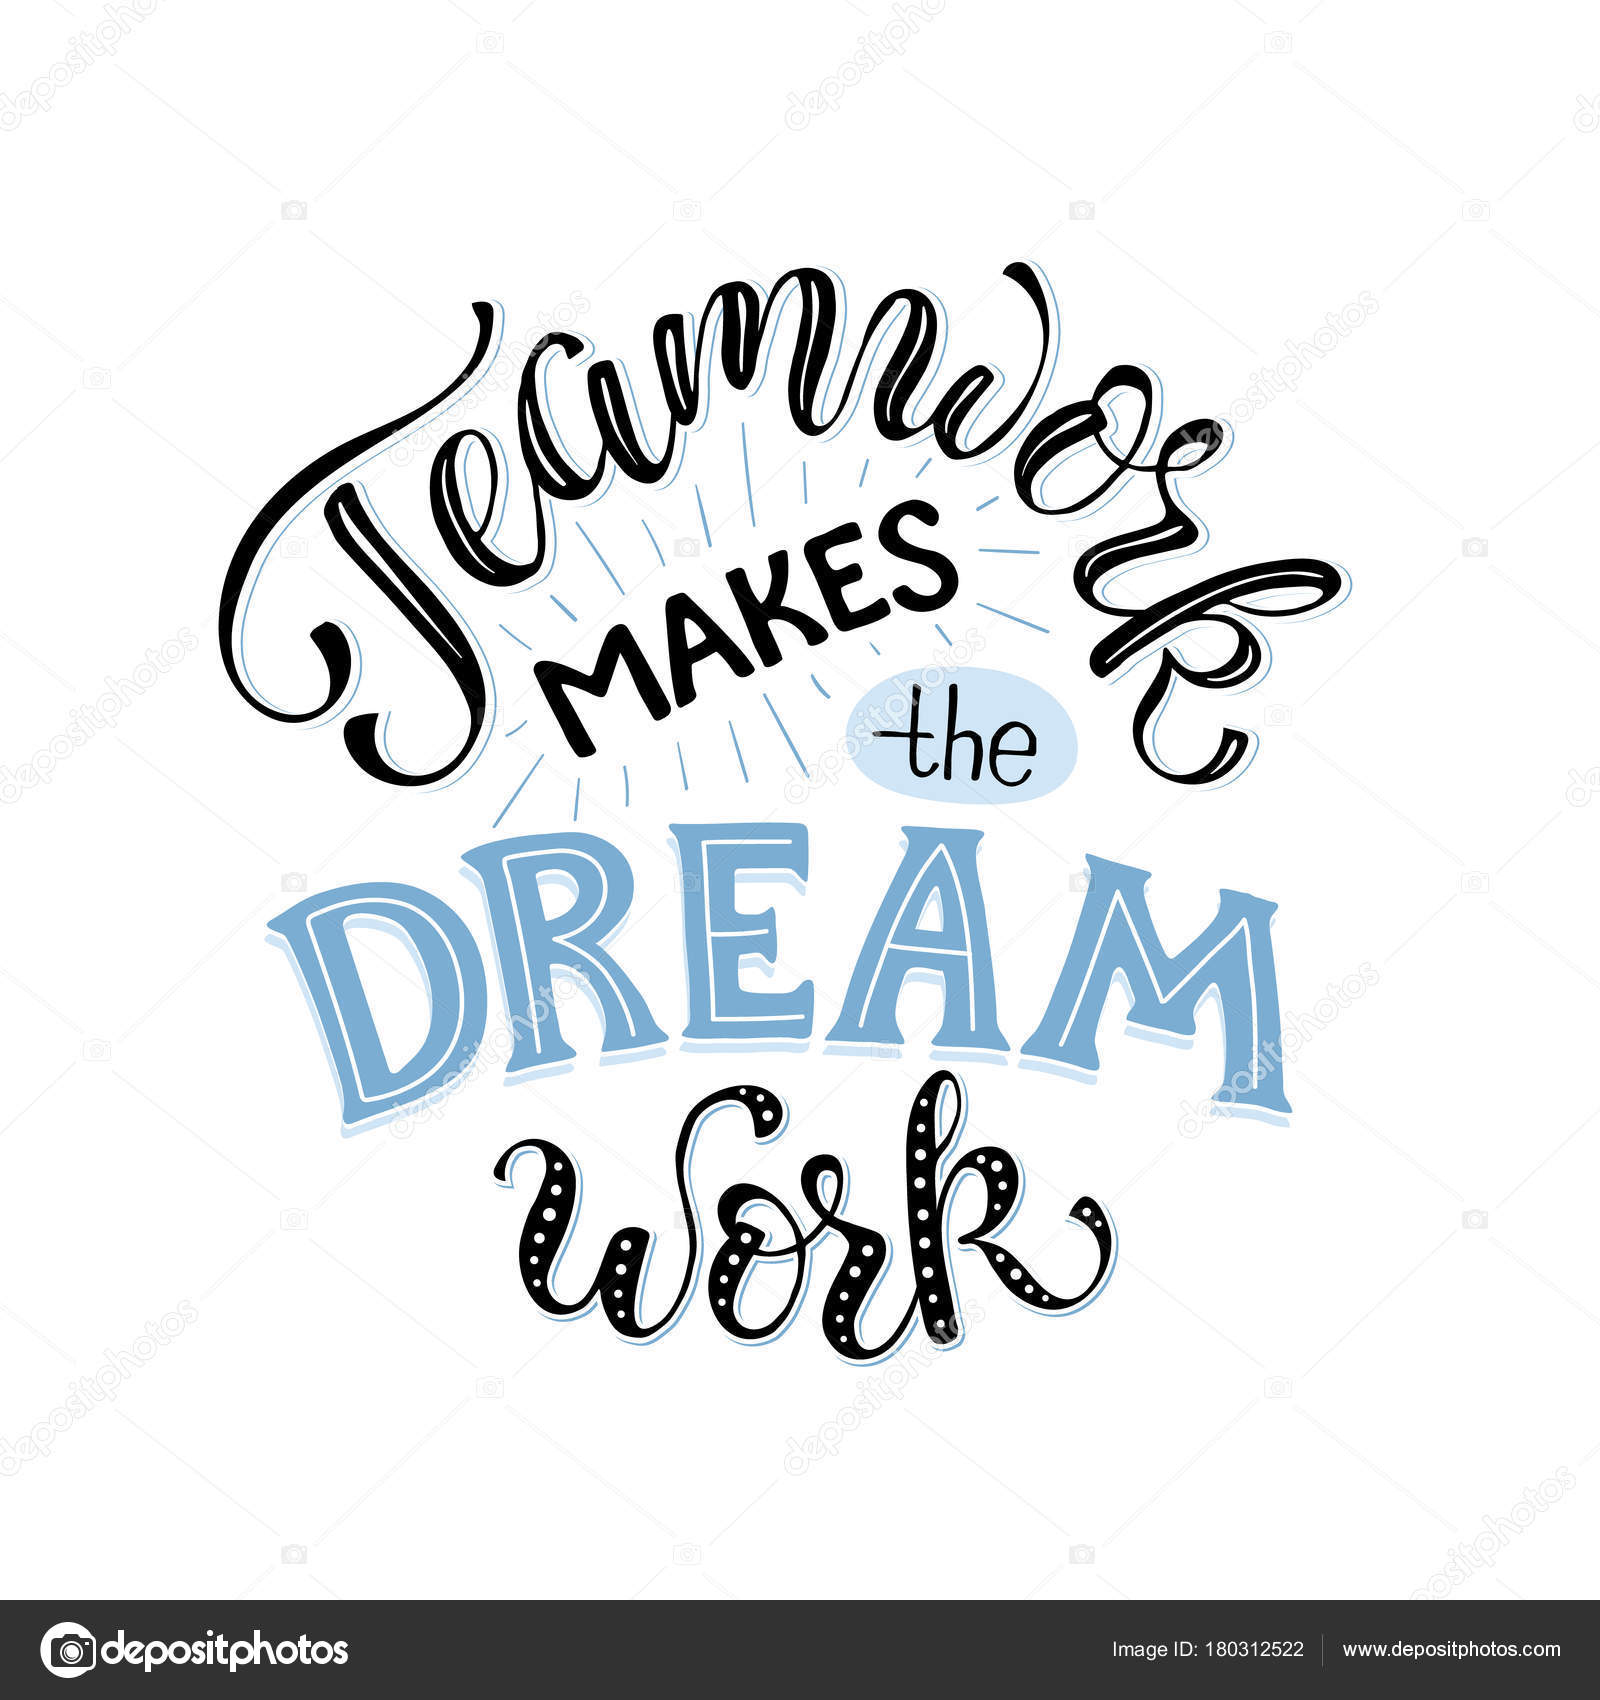 teamwork motivational poster